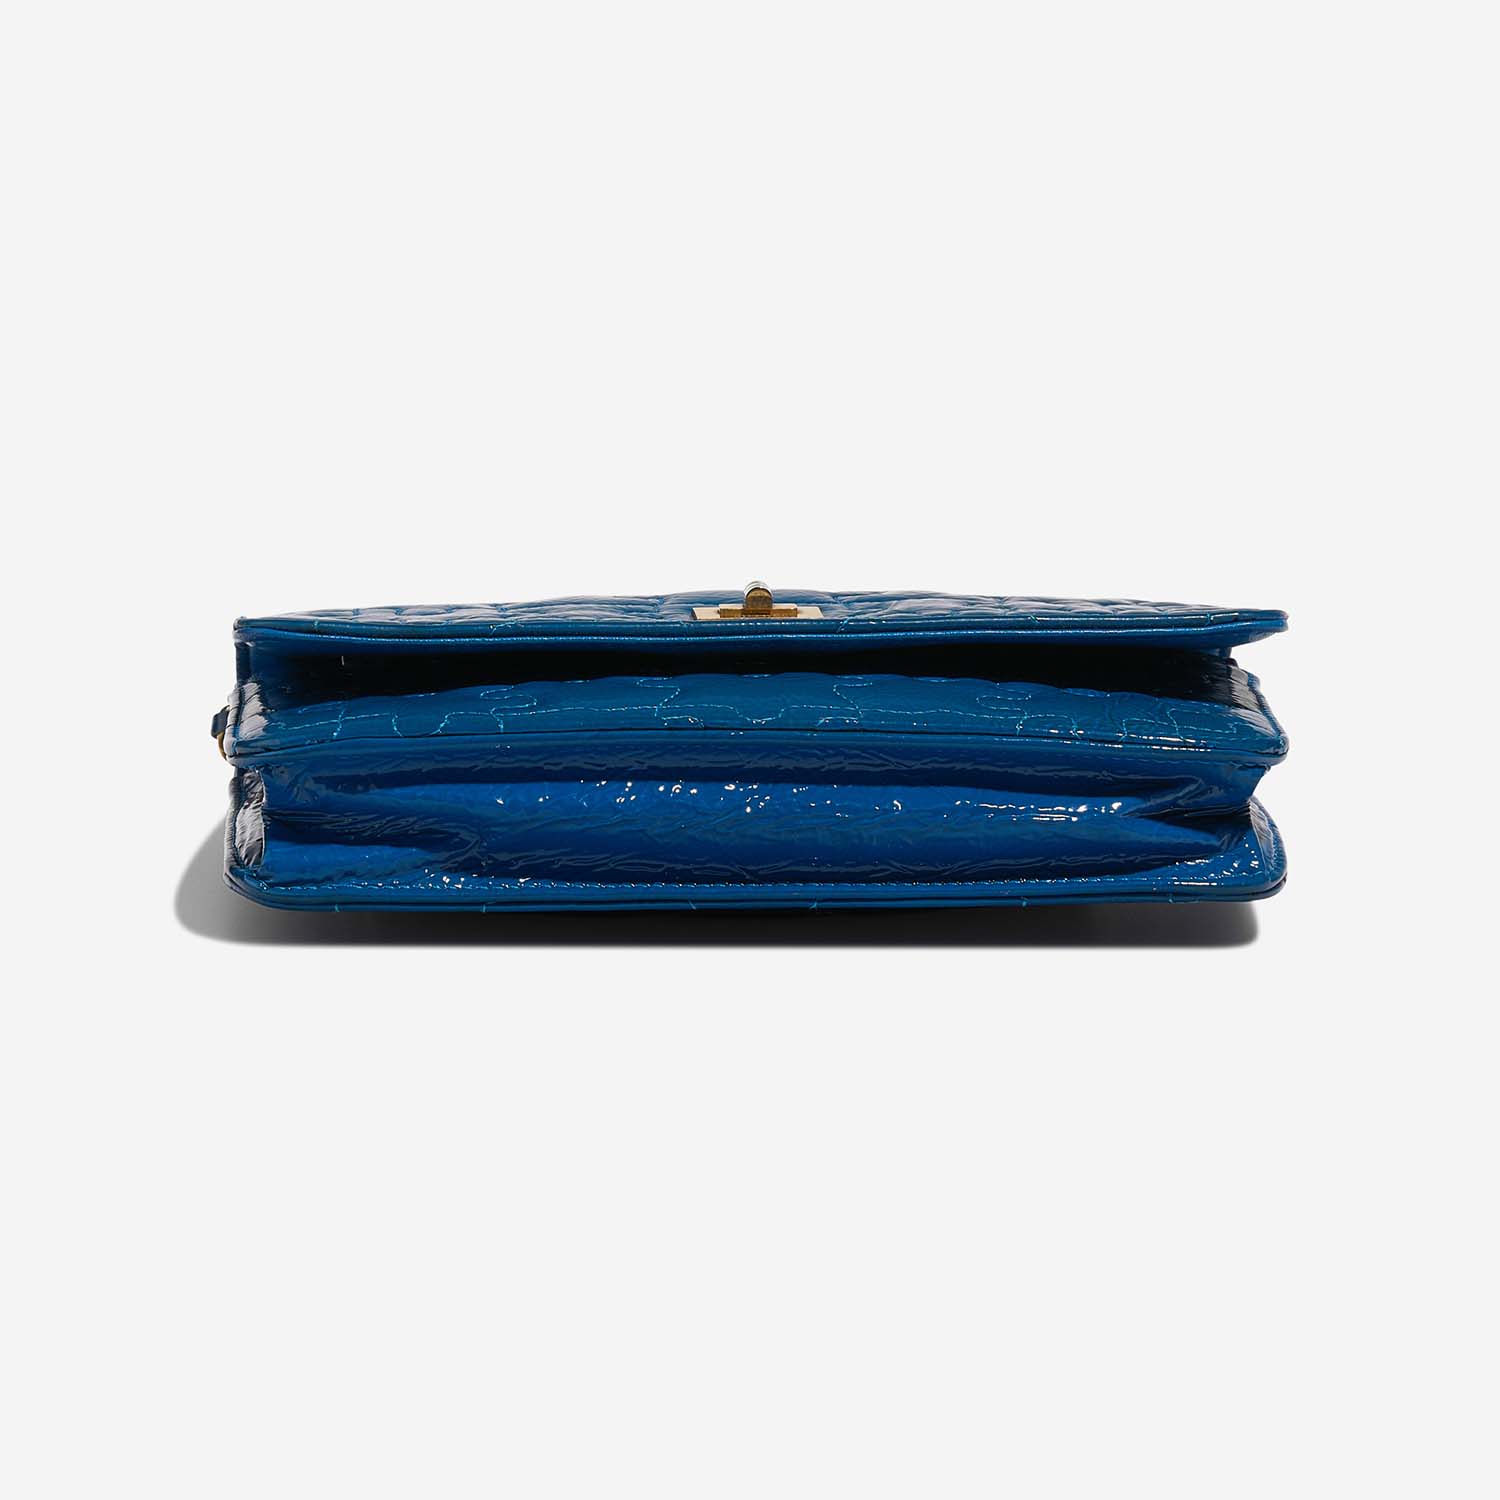 Chanel 255 WOC Blue Bottom | Verkaufen Sie Ihre Designer-Tasche auf Saclab.com